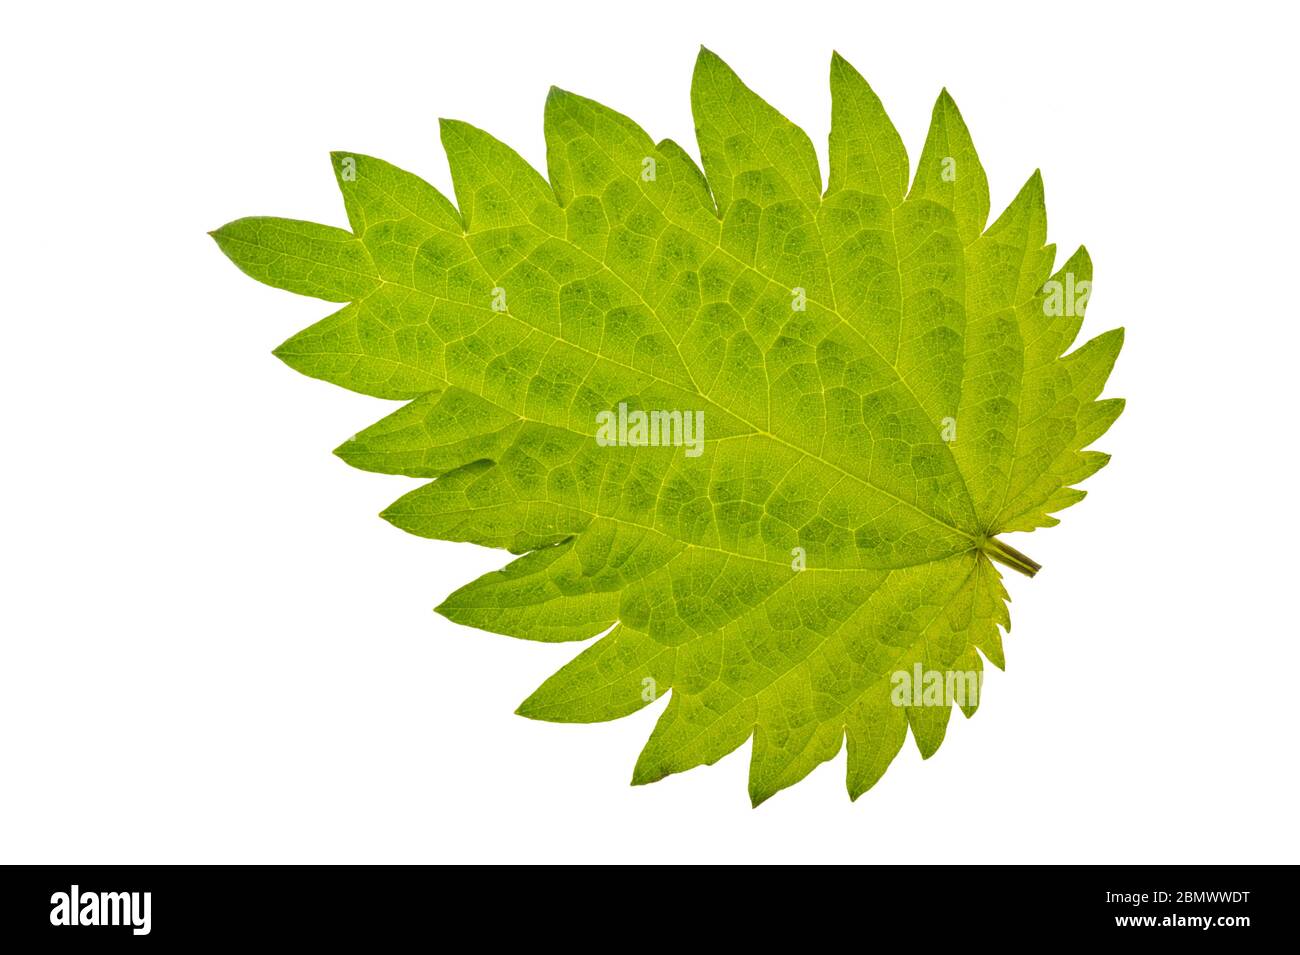 single leaf of stinging nettle isolated over white background Stock Photo